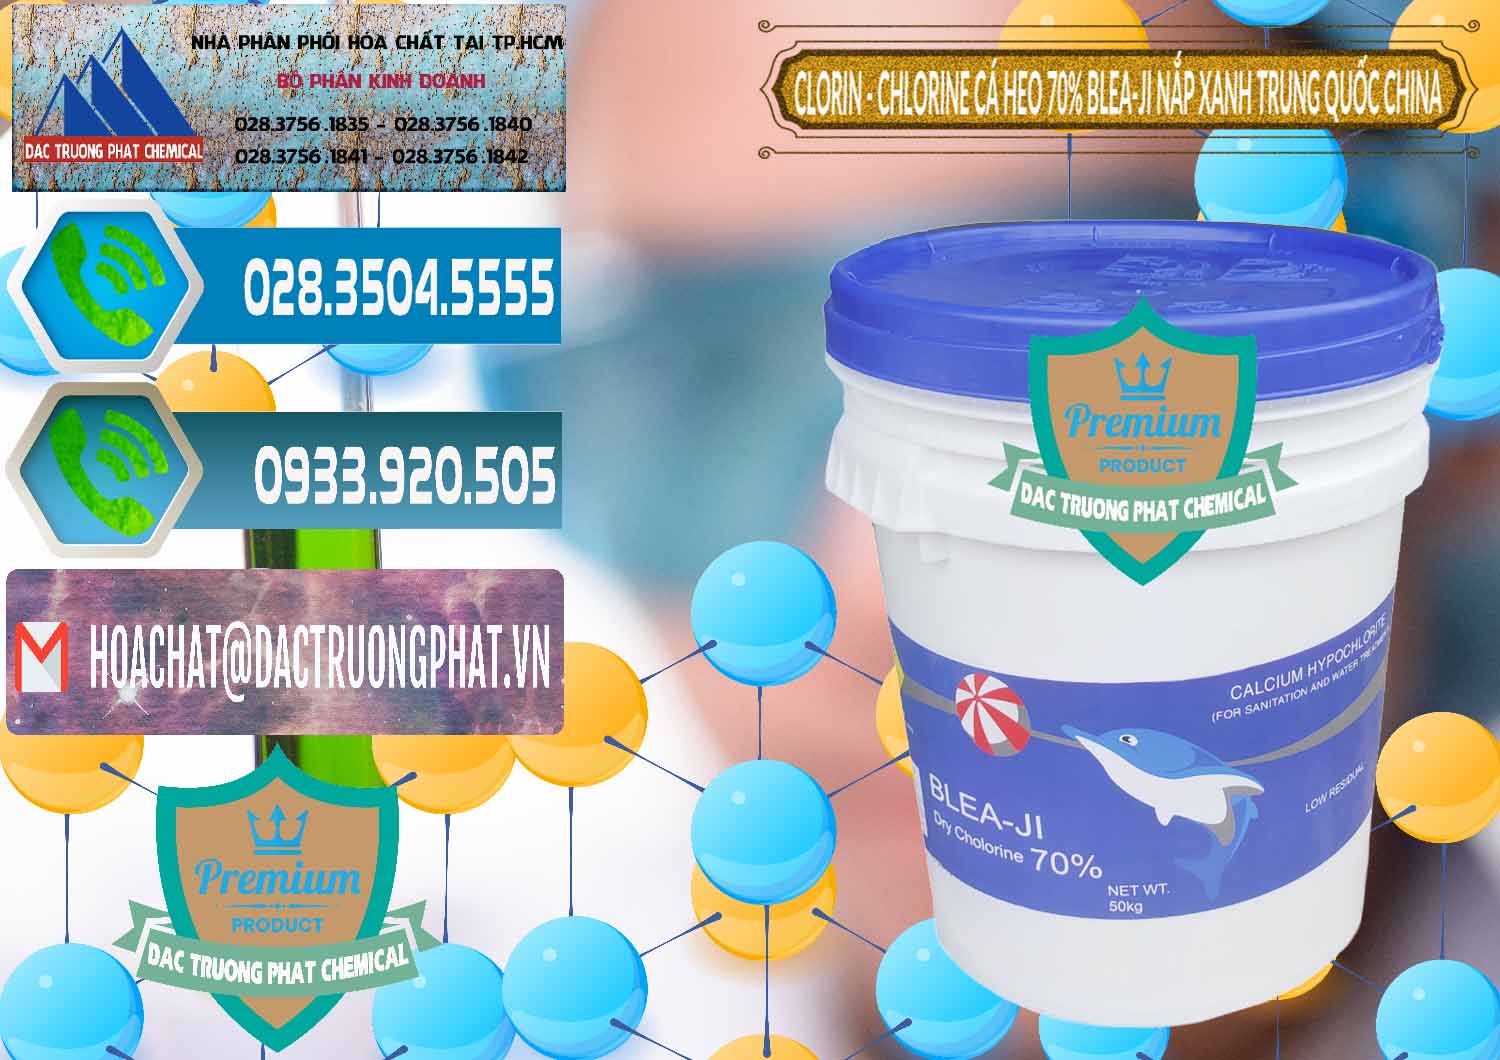 Công ty chuyên cung cấp và bán Clorin - Chlorine Cá Heo 70% Cá Heo Blea-Ji Thùng Tròn Nắp Xanh Trung Quốc China - 0208 - Cty chuyên bán ( cung cấp ) hóa chất tại TP.HCM - congtyhoachat.net